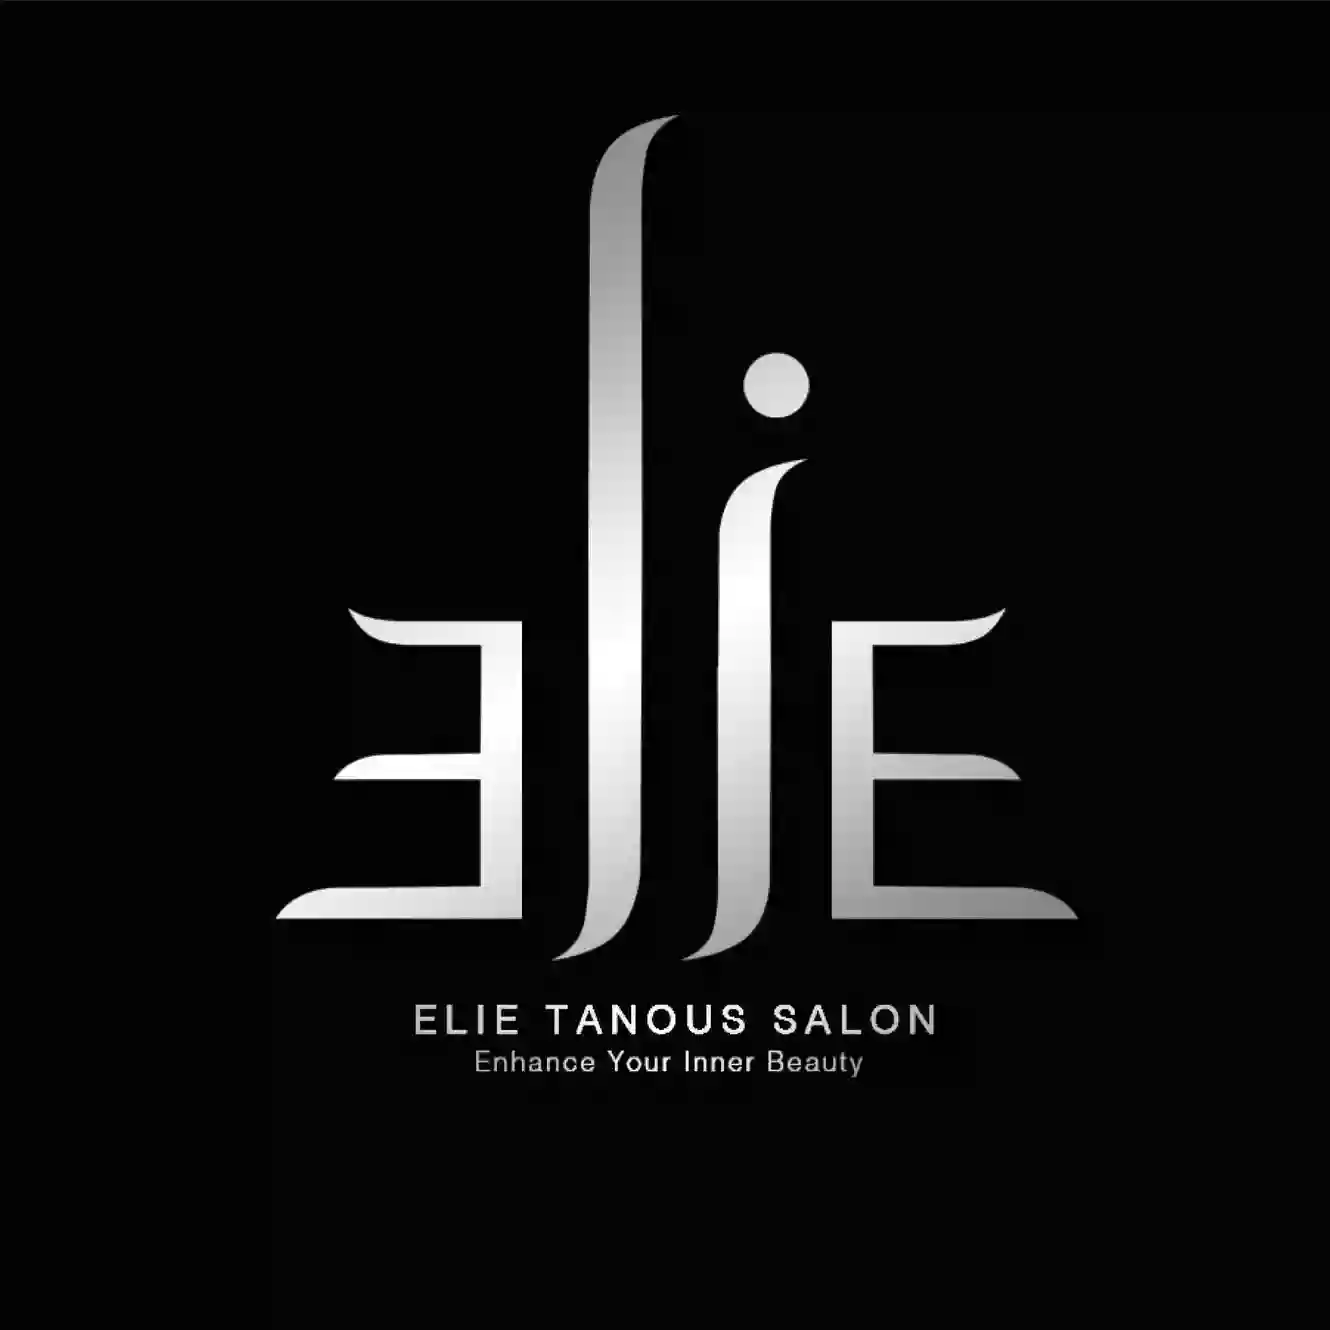 Elie Tanous Salon